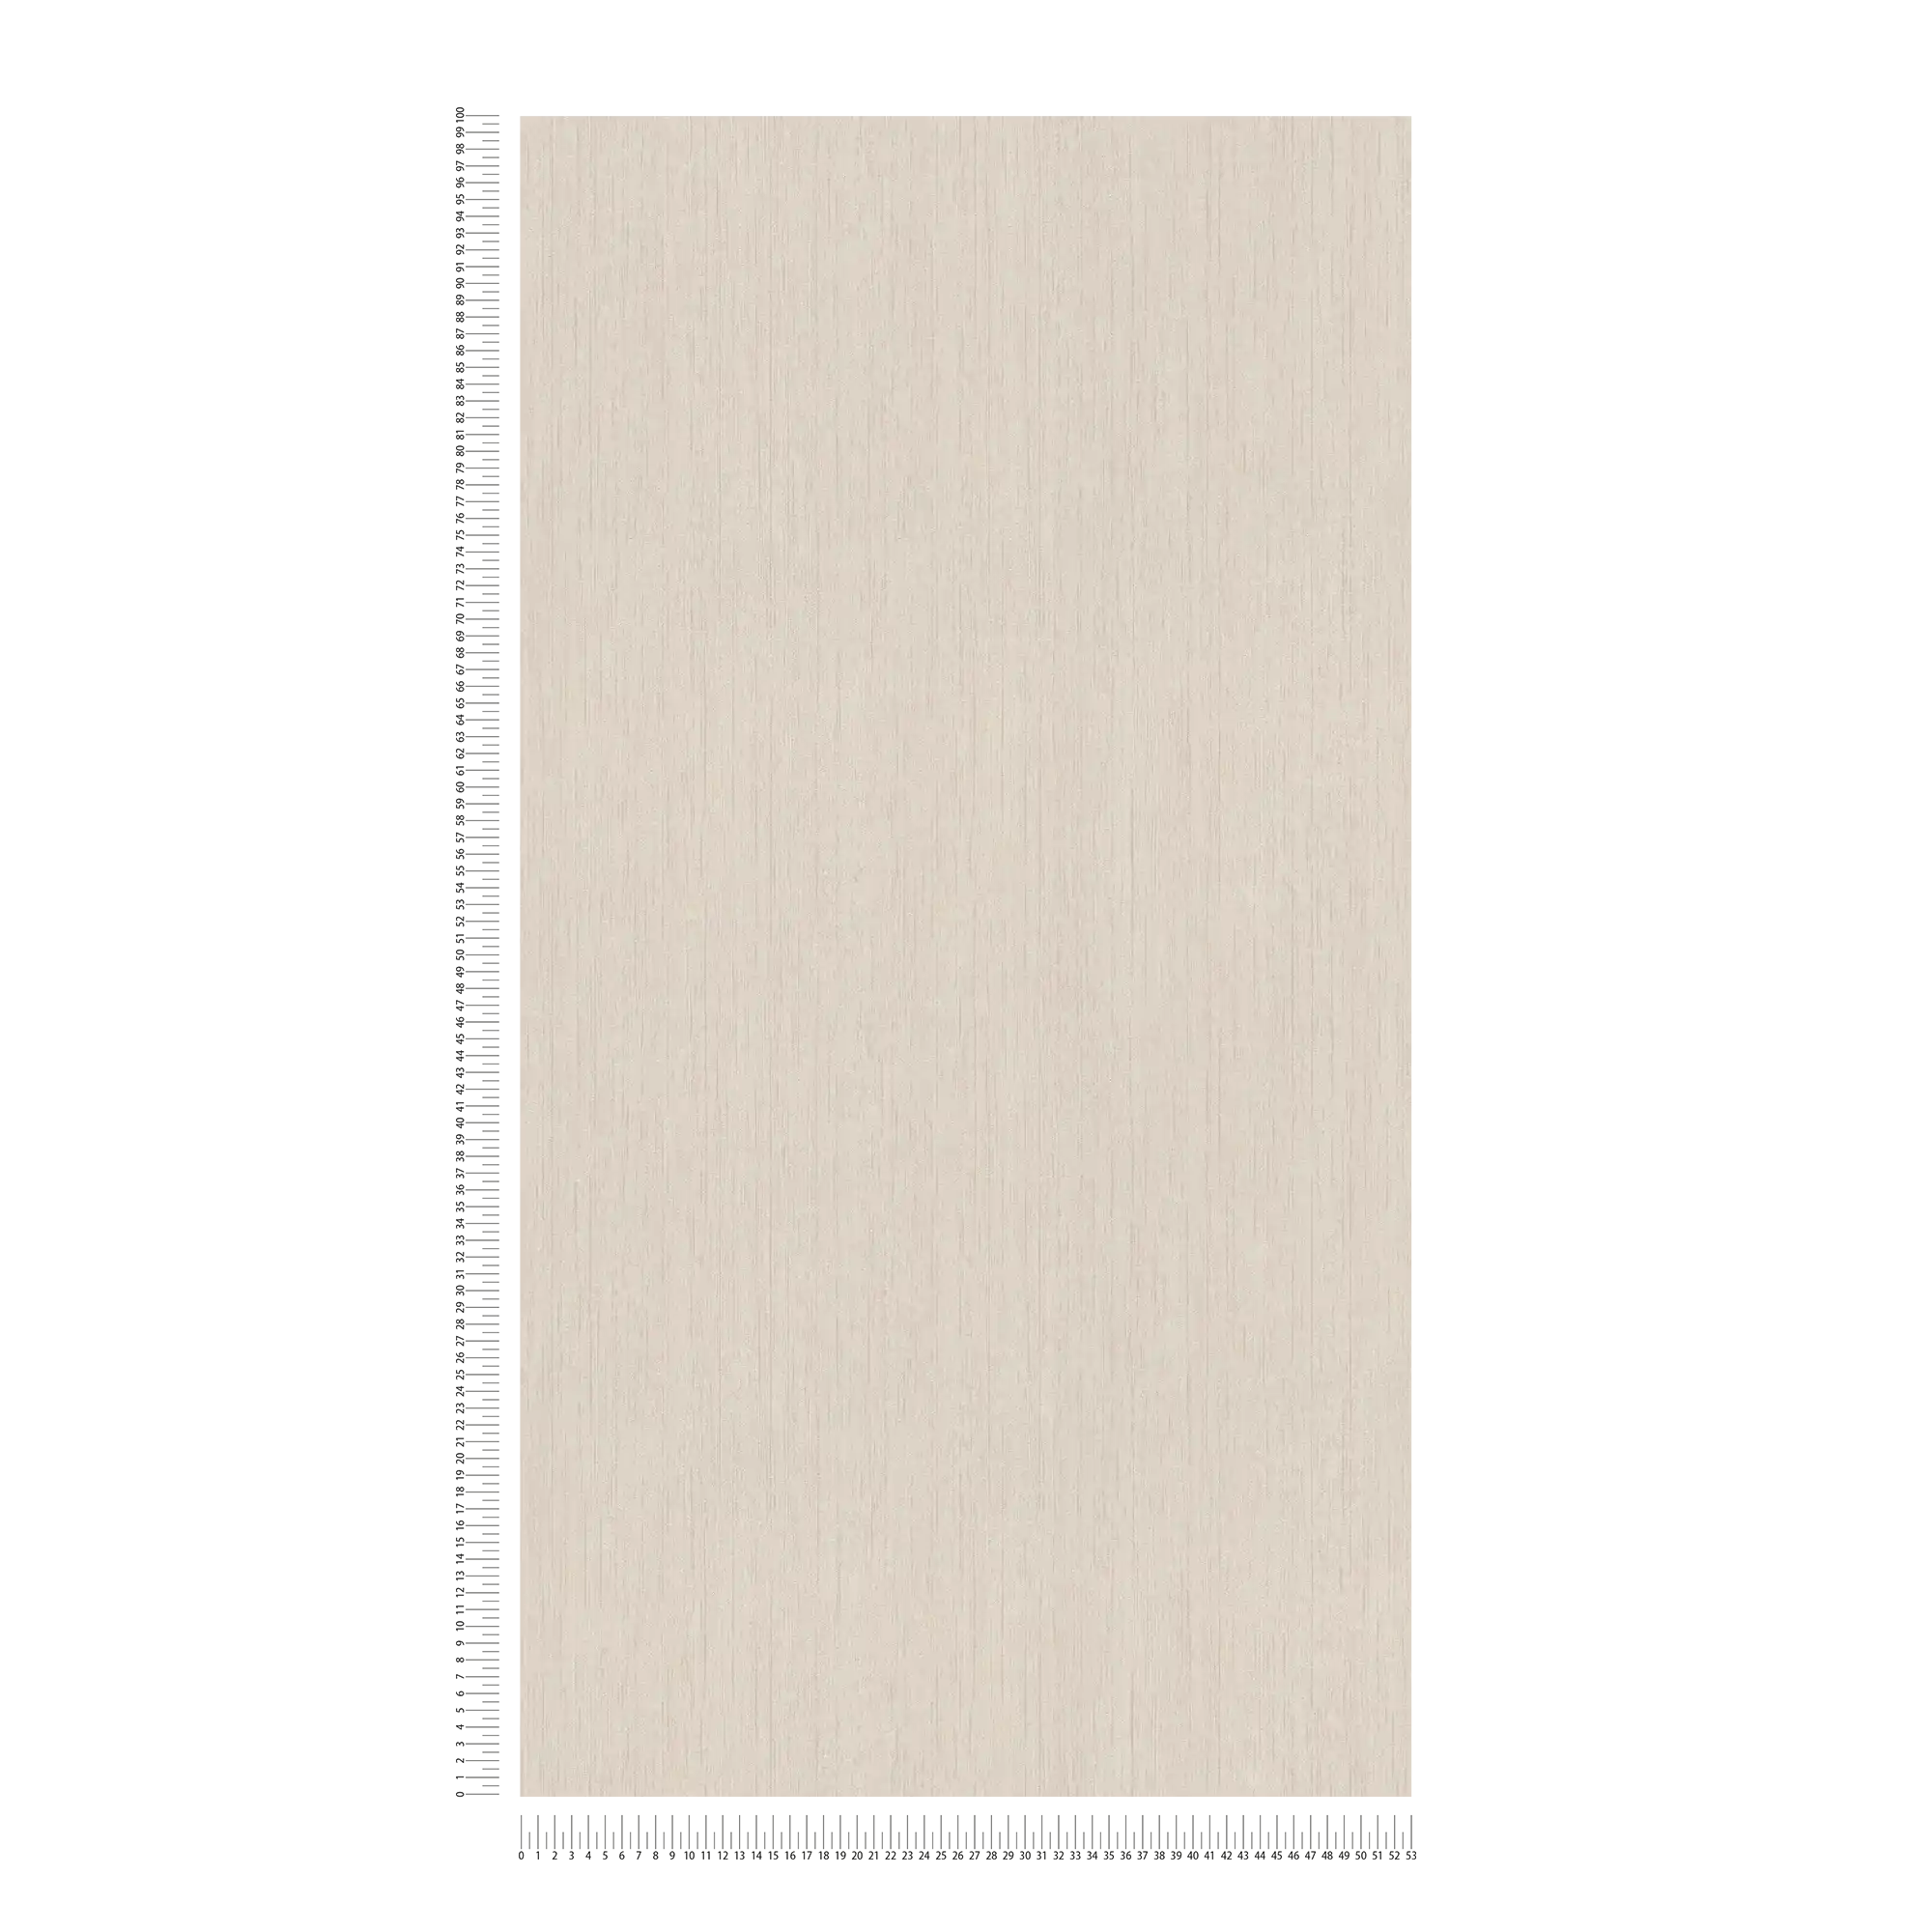             Carta da parati effetto legno beige bambù con struttura in rilievo
        